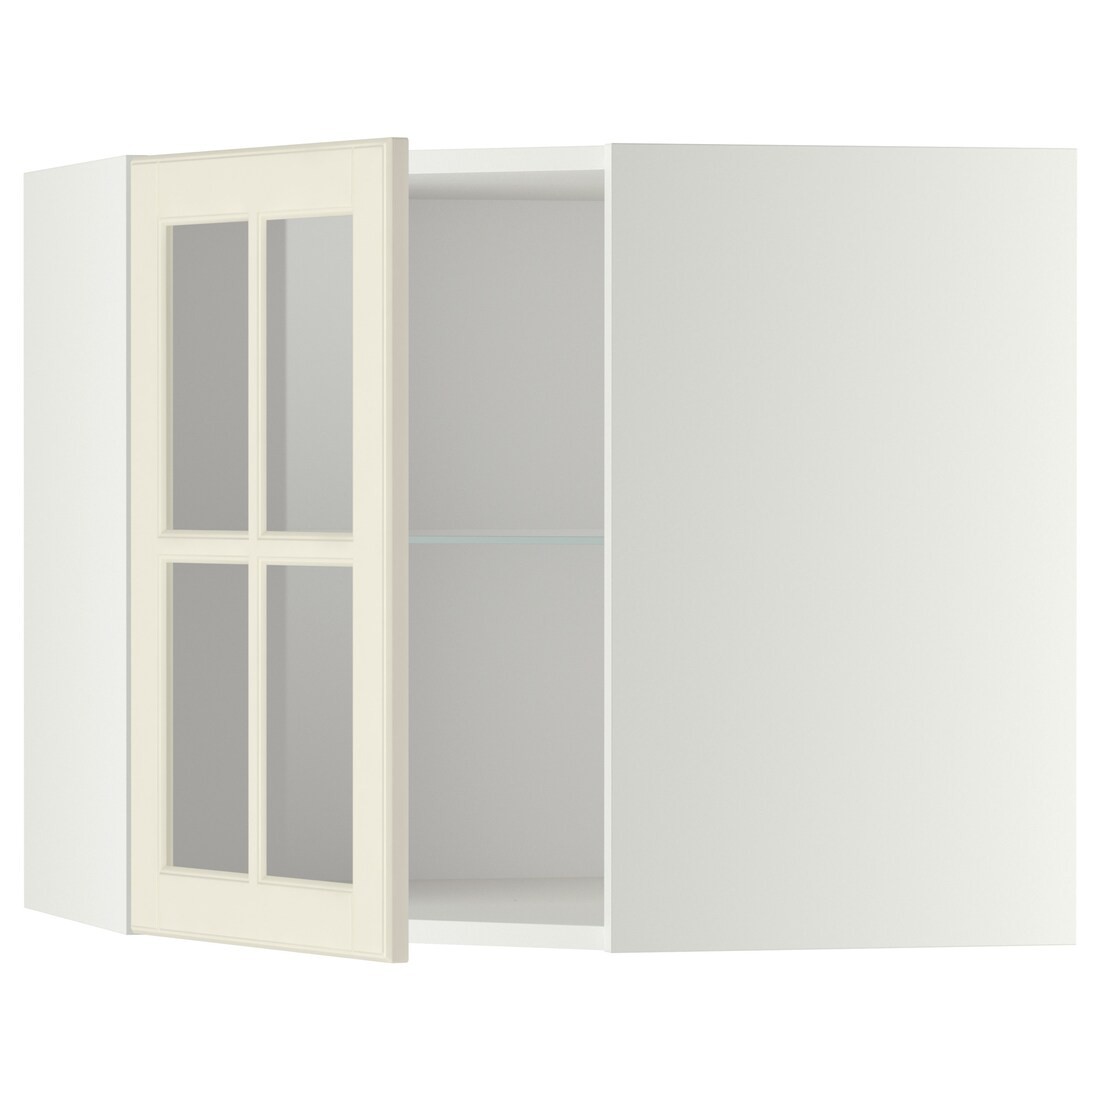 IKEA METOD МЕТОД Угловой настенный шкаф с полками / стеклянная дверь, белый / Bodbyn кремовый, 68x60 см 49395509 493.955.09